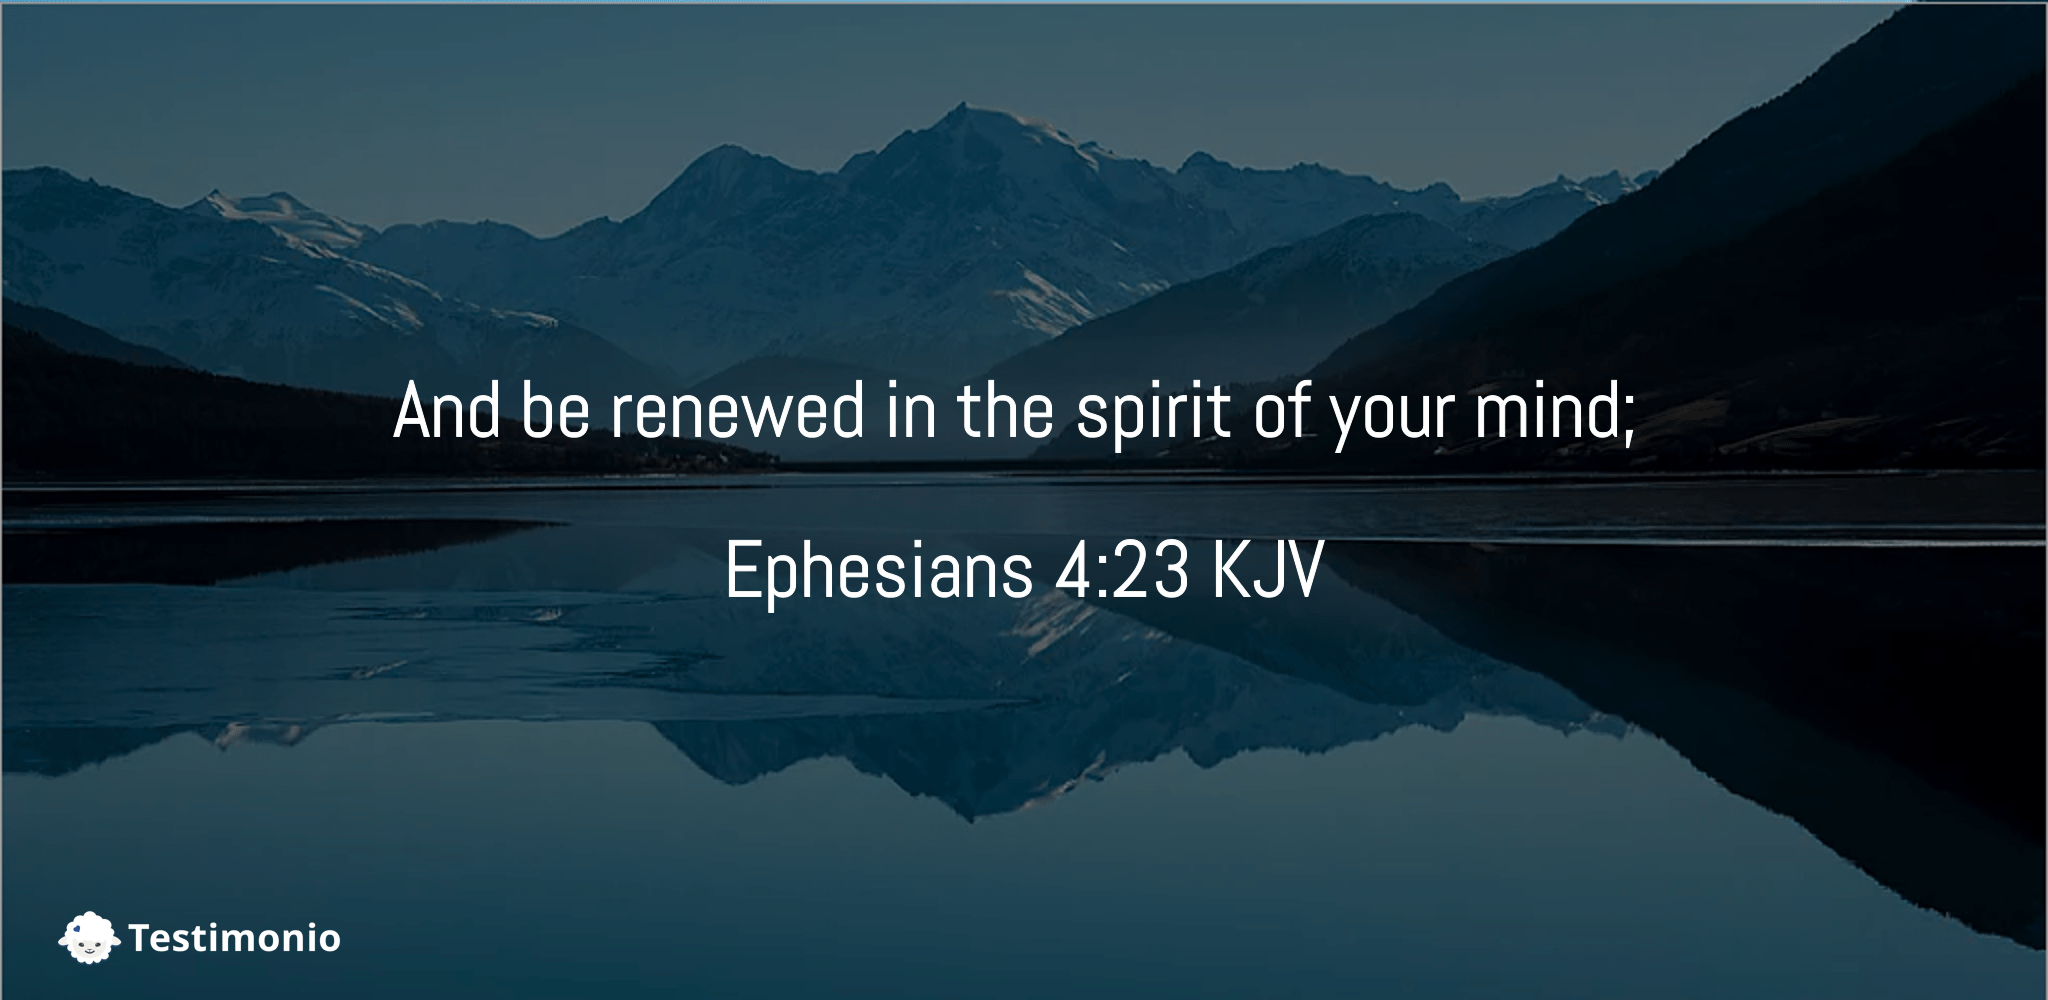 Ephesians 4:23